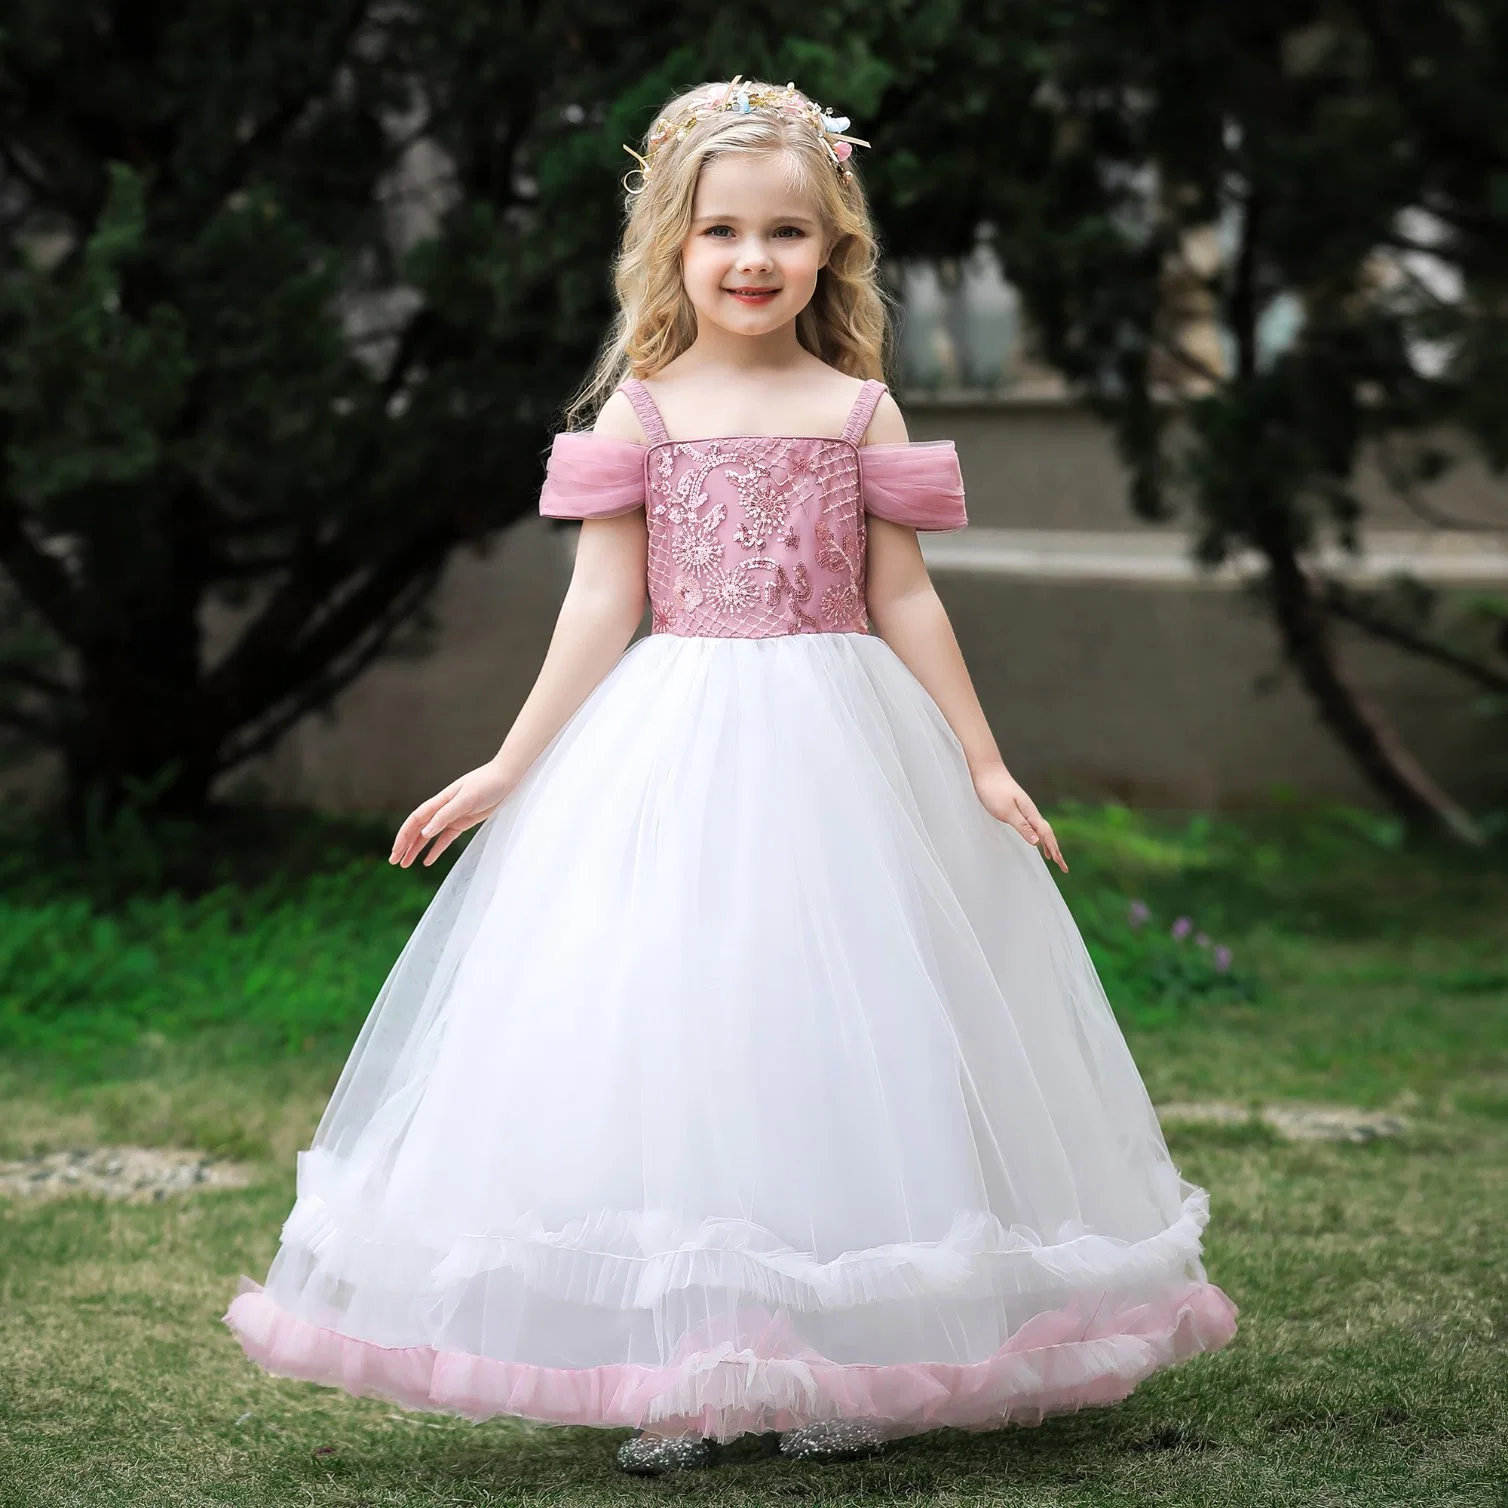 Kinderbekleidung Babykleidung Mädchen Party Bekleidung Hochzeitskleid Ball Kleid Prinzessin Geck Süße Lange Kleid Ärmellos